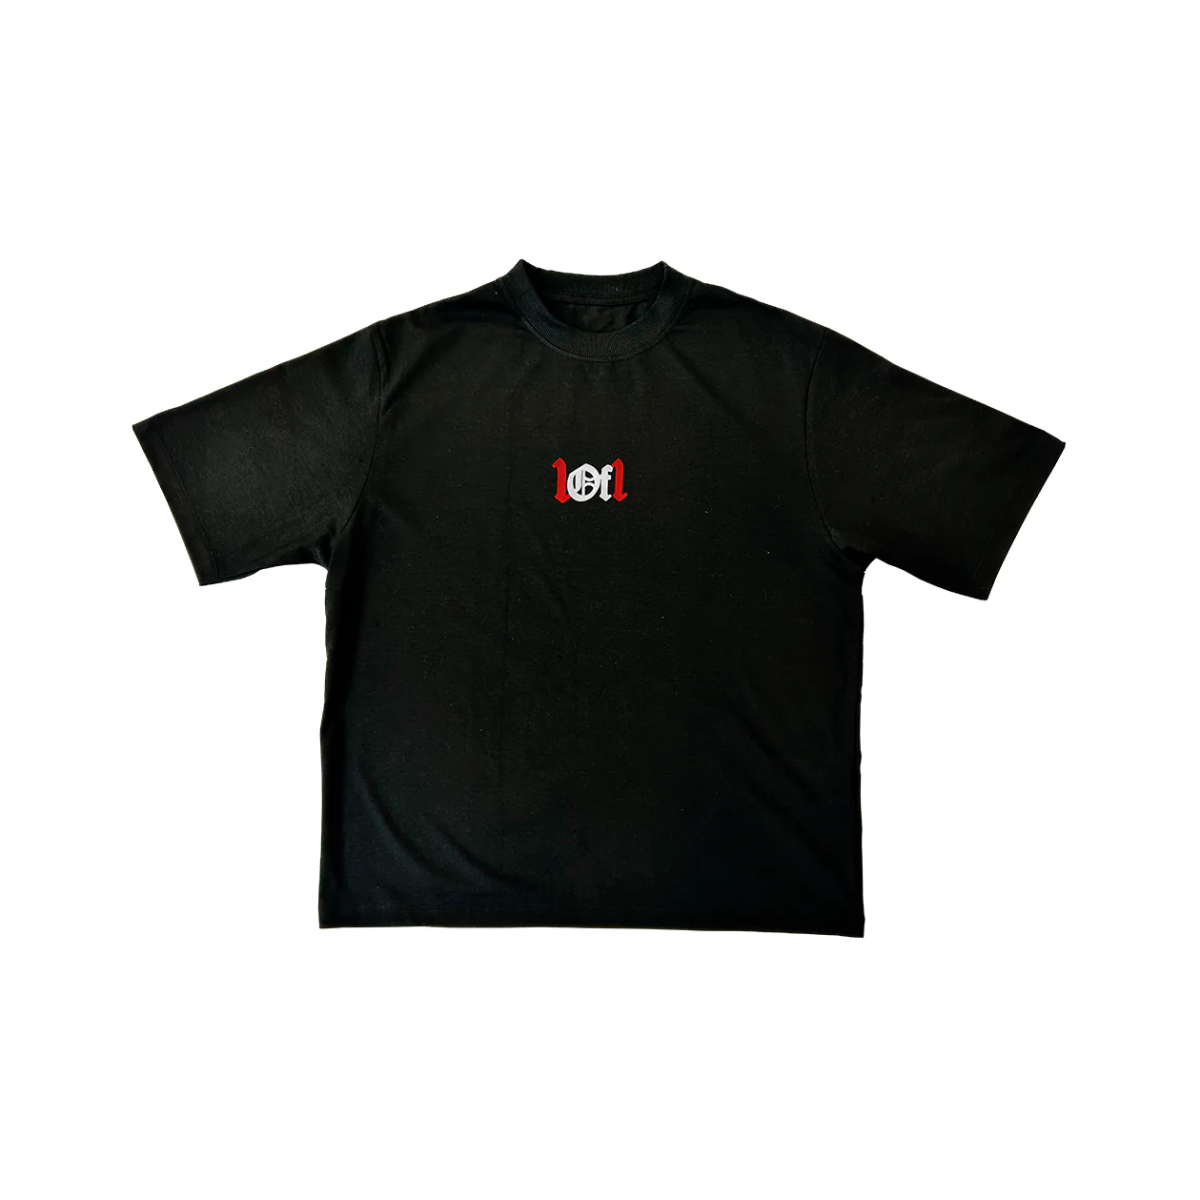 Exclusivist 1of1 - Camiseta 'Redrum' Black